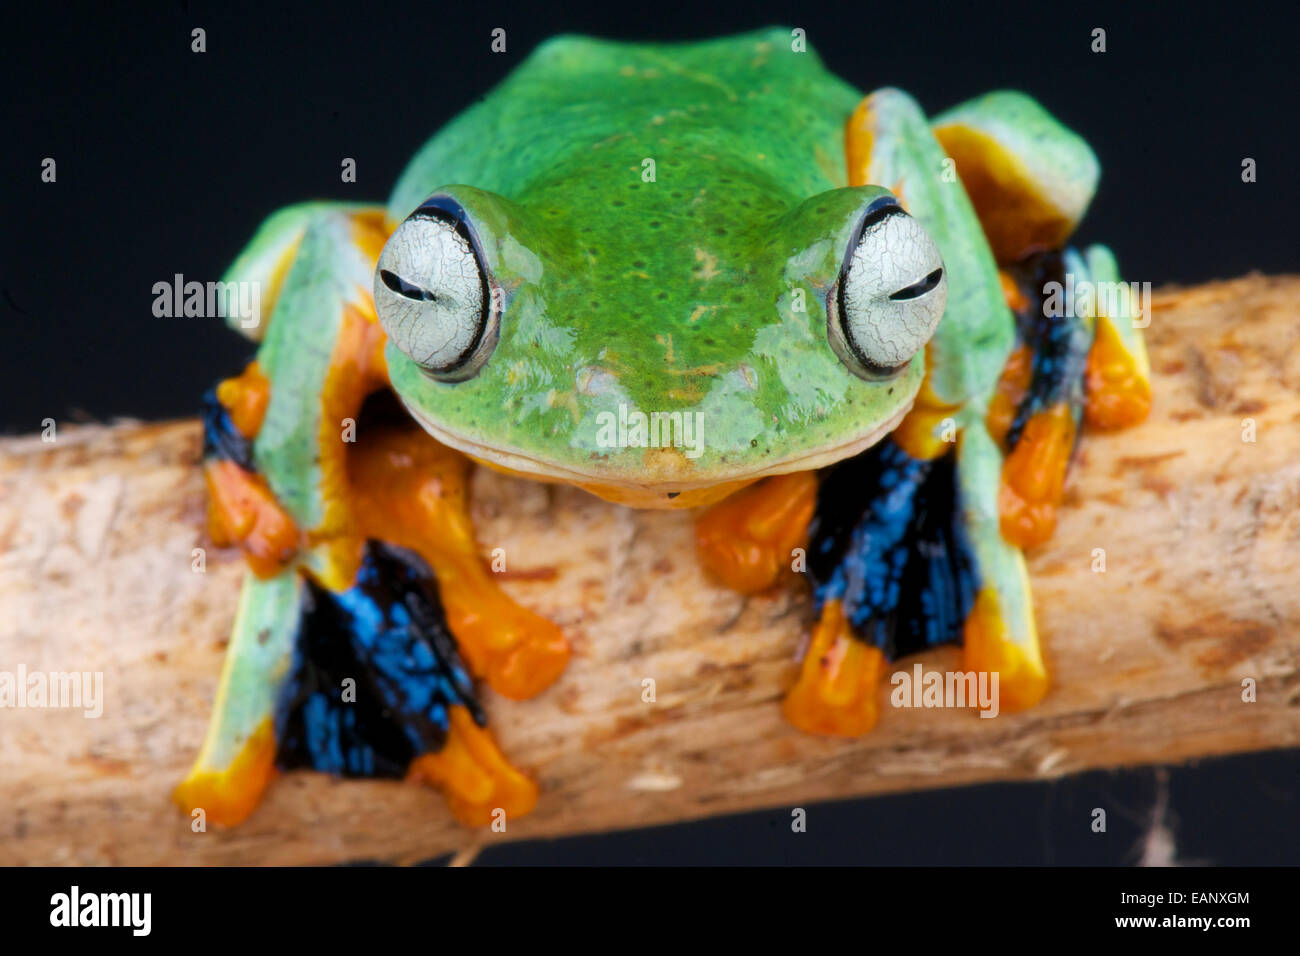 Flying frog / Rhacophorus reinwardtii Stock Photo